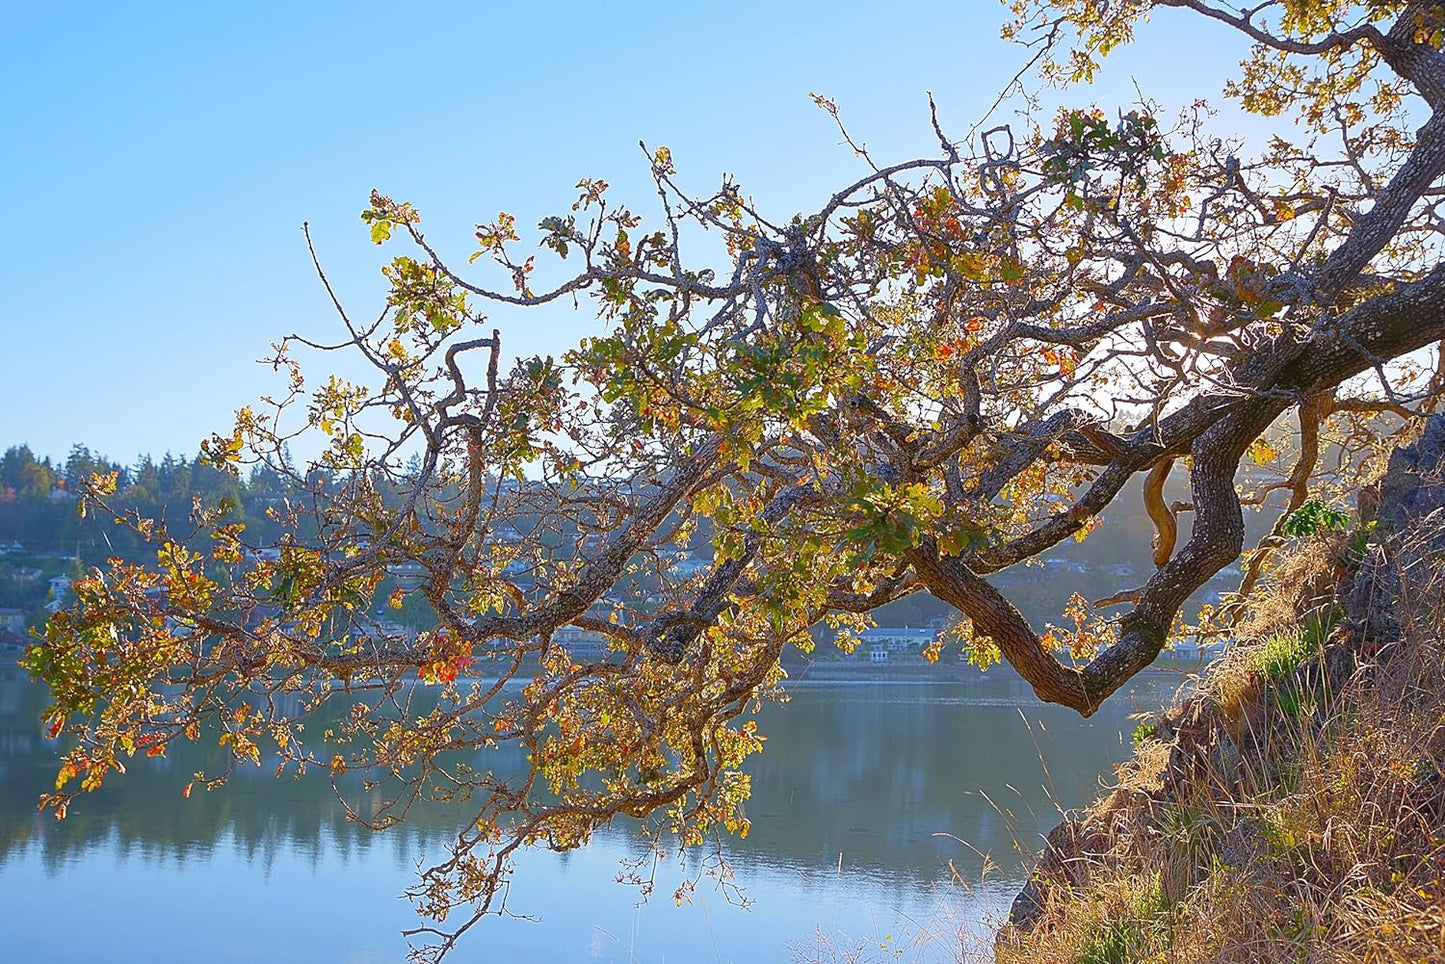 Hundredfold Garry Oak Oregon White Oak 3 Acorns - Quercus garryana Pacific Coast British Columbia California Native Tree